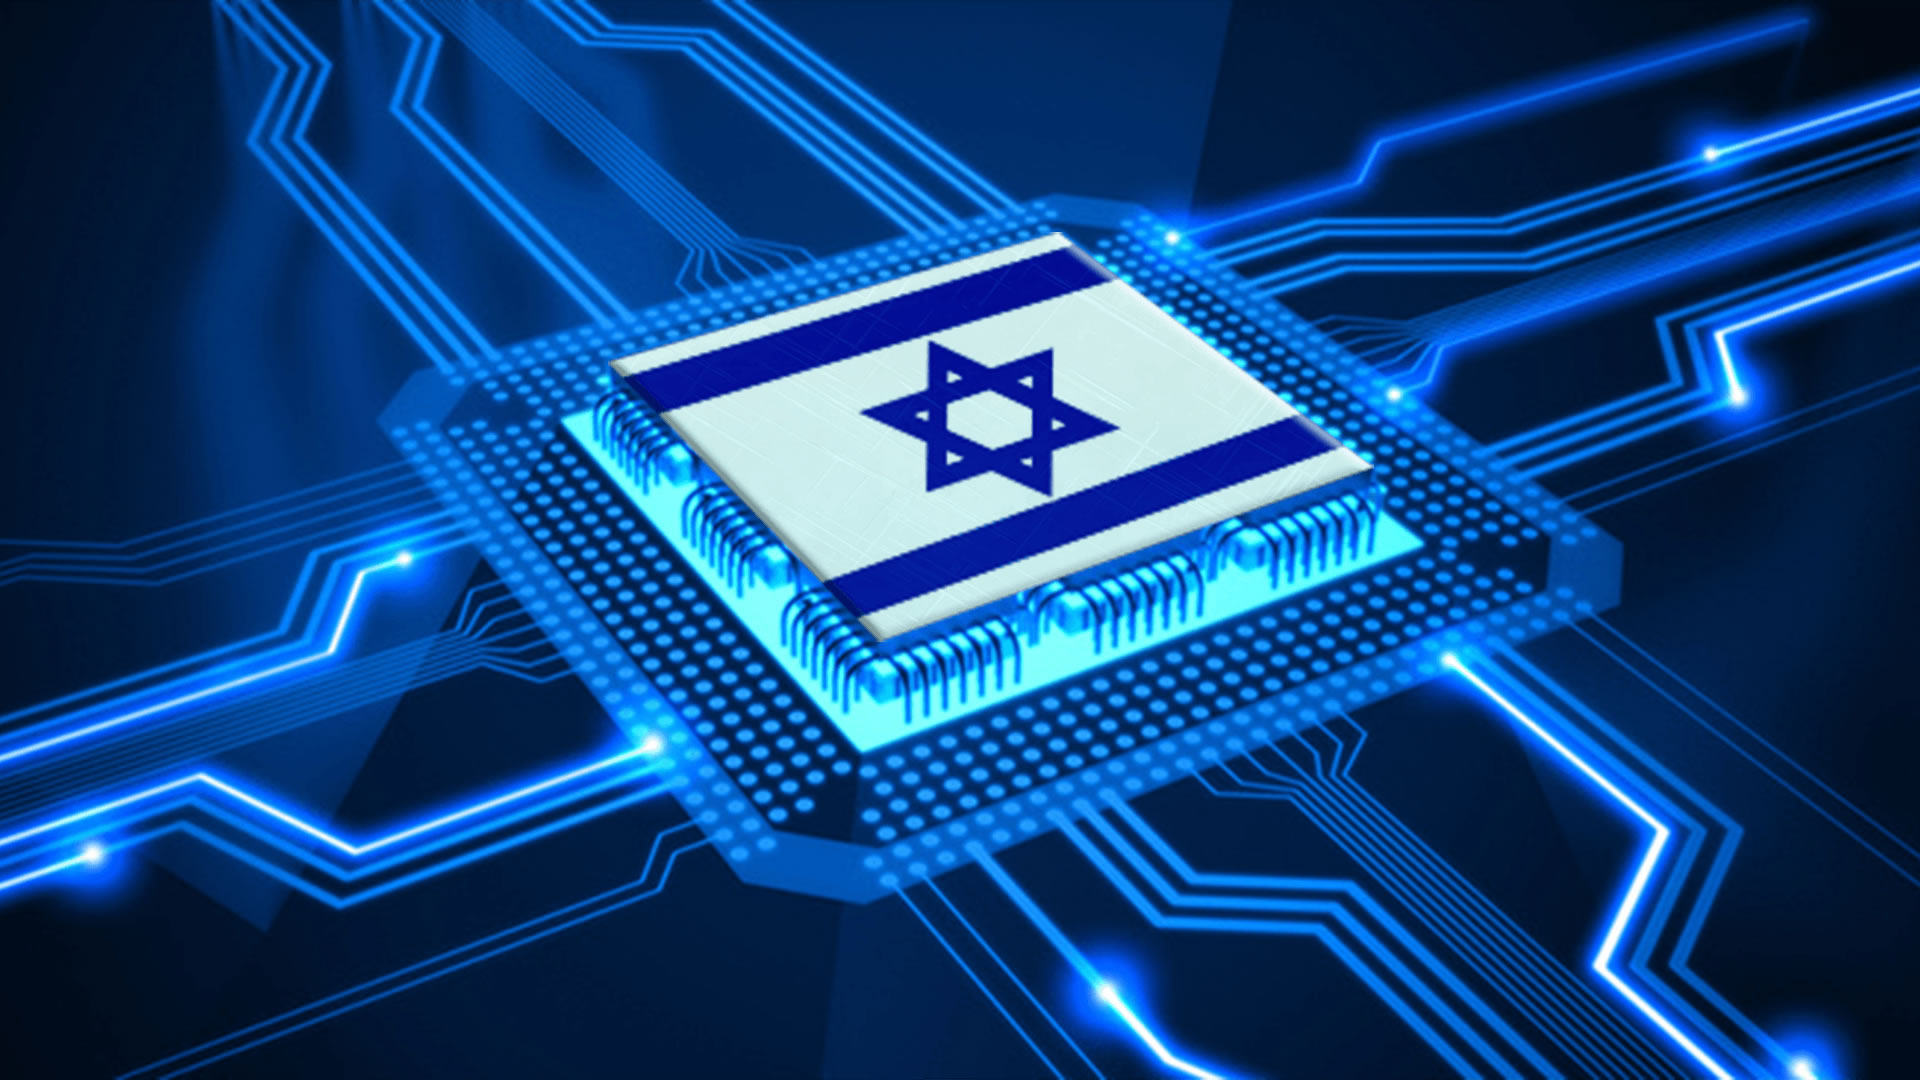 Tecnologia-israelense-acaba-com-o-problema-da-perda-das-chaves-do-carro